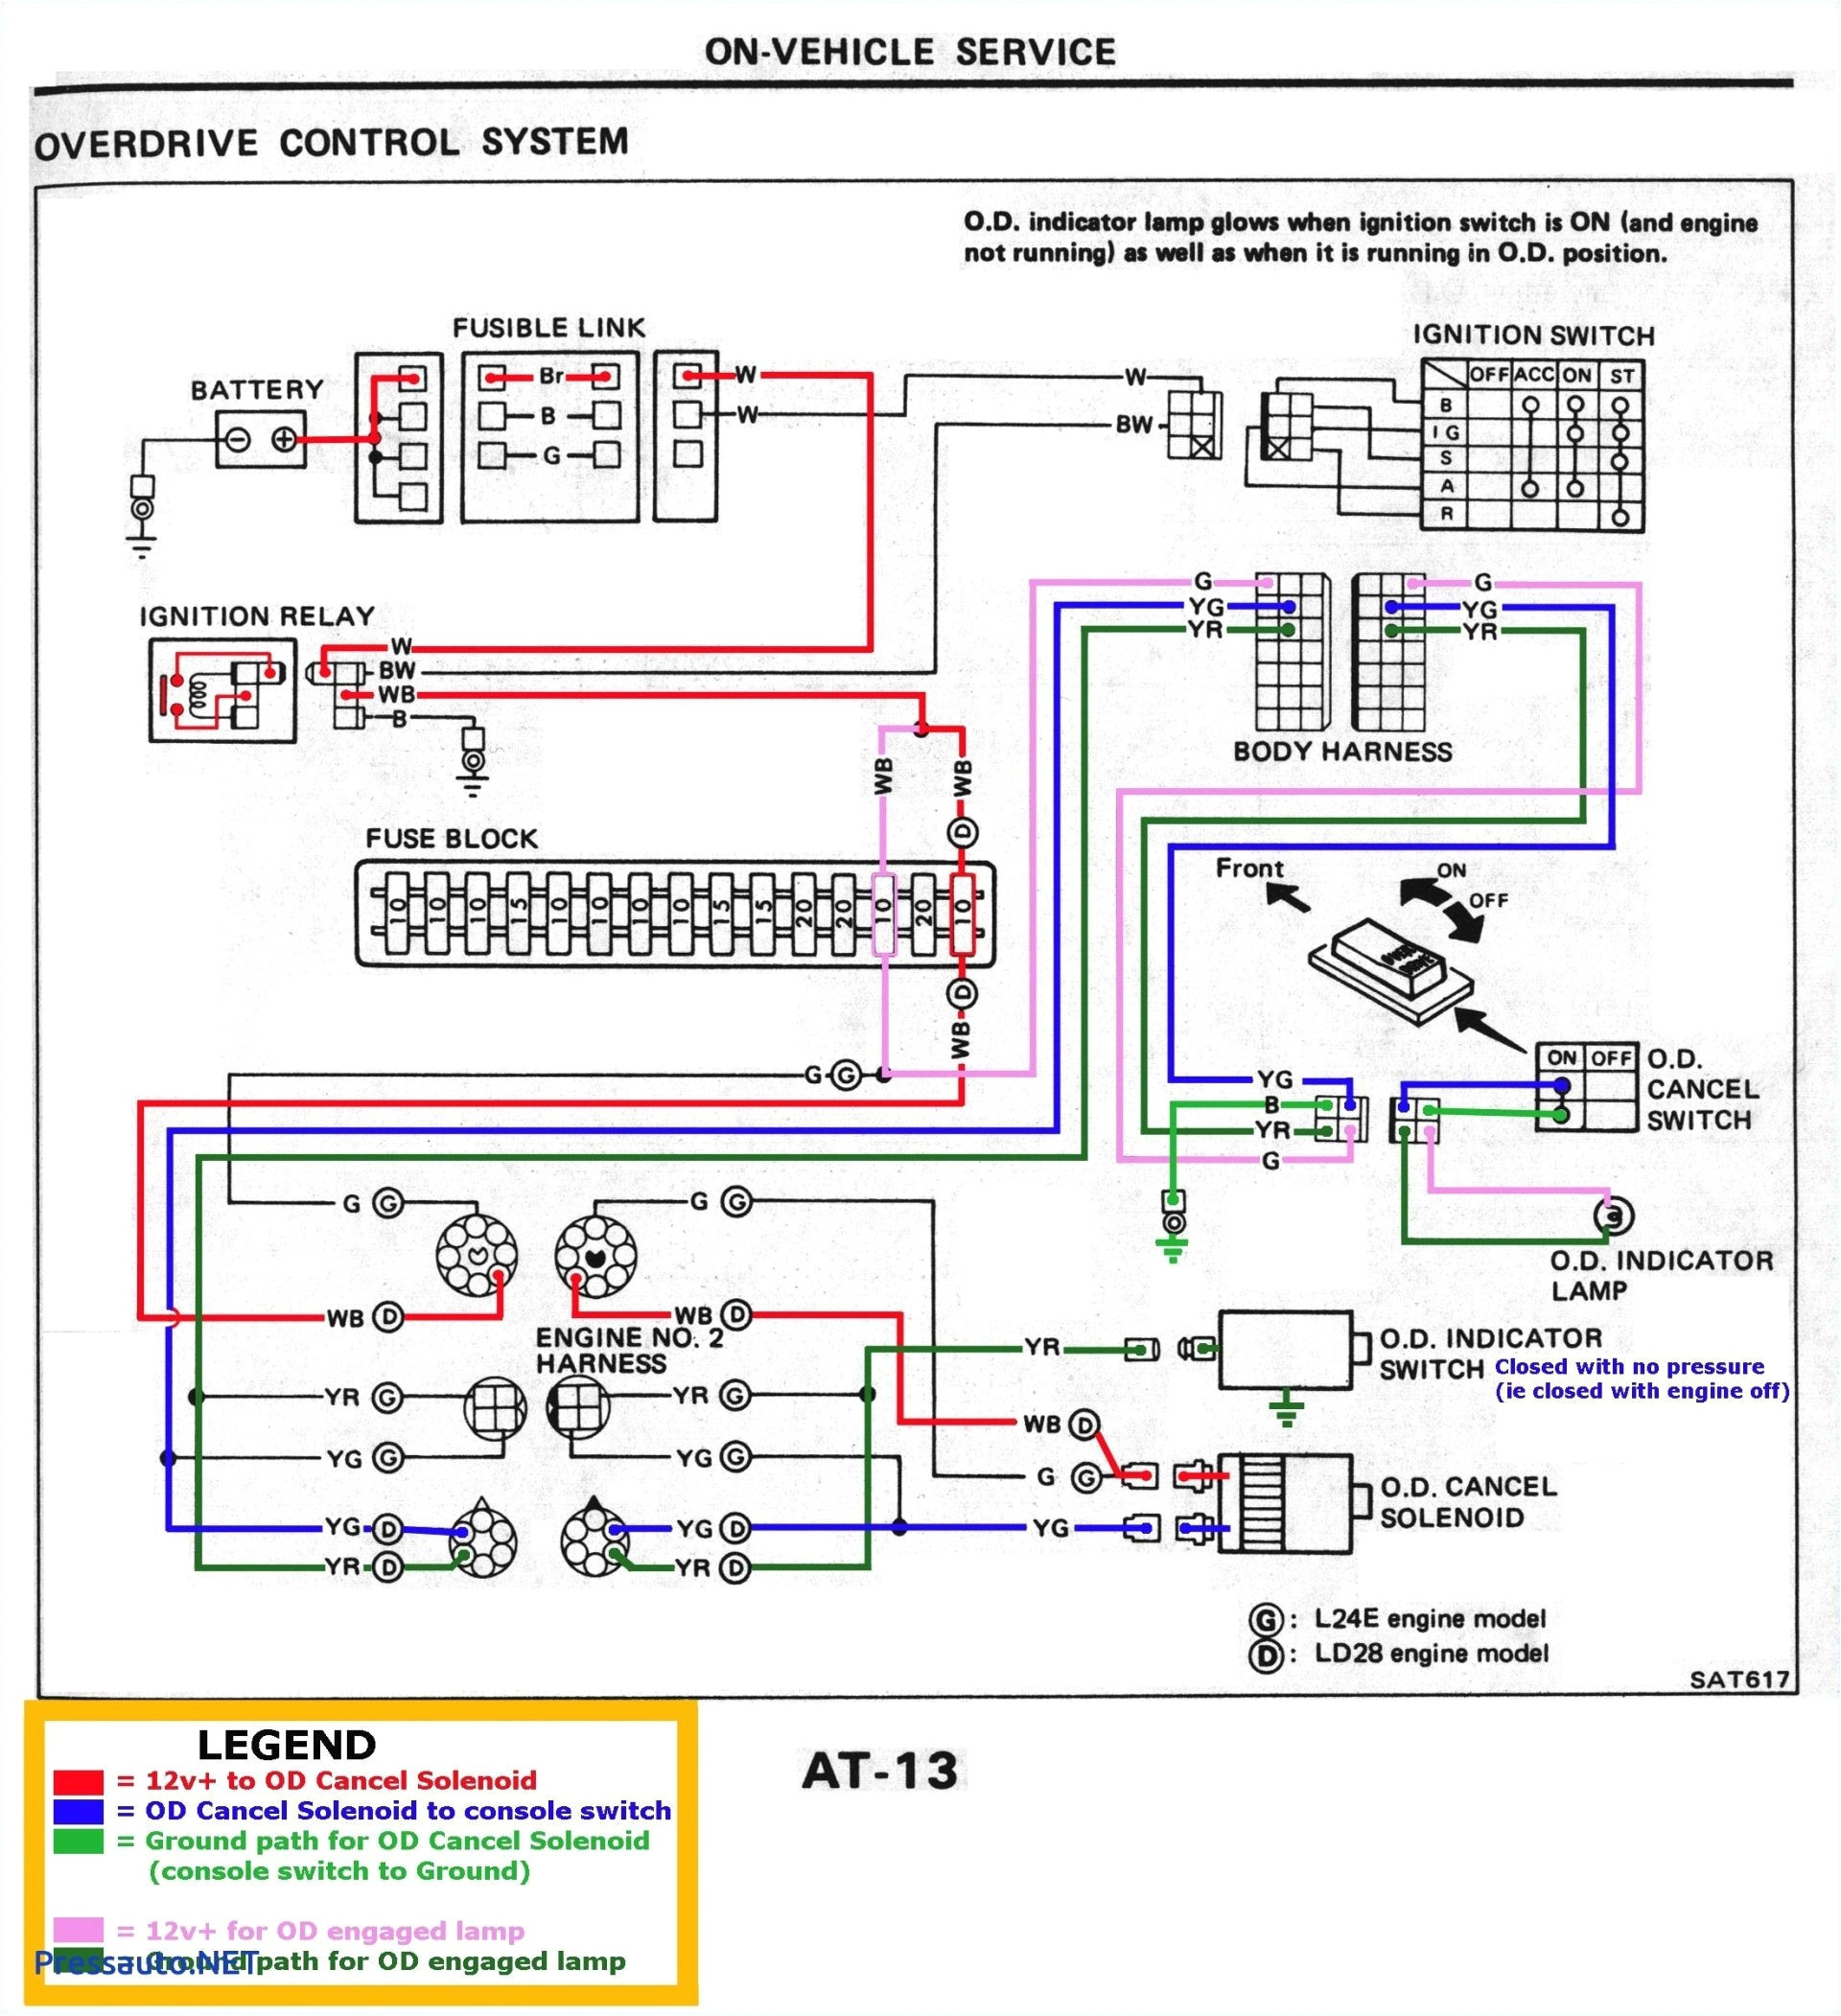 holden colorado wiring diagram best of isuzu rodeo fuel pump wiring diagram best plete wiring diagram